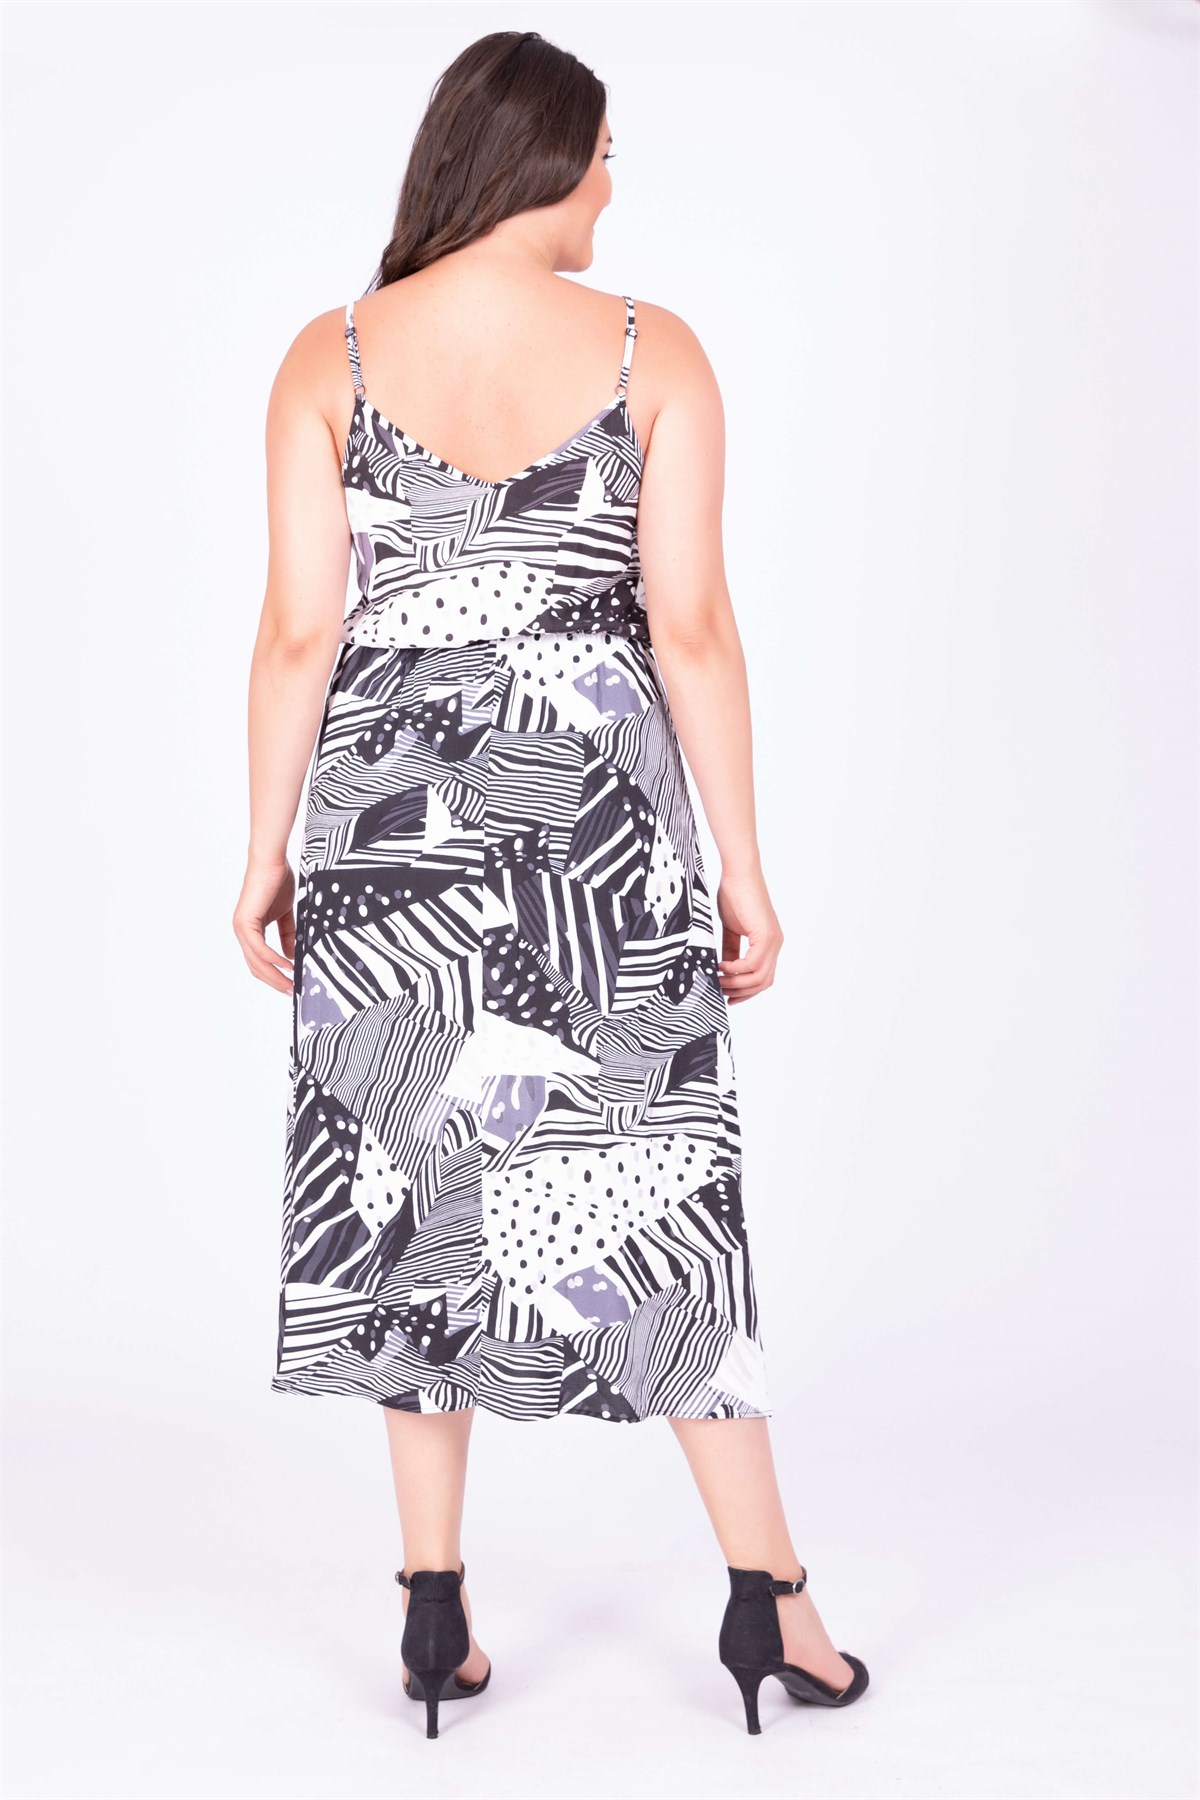 İp Askılı Beli Lastikli Yırtmaçlı Elbise - Mylinemoda.com